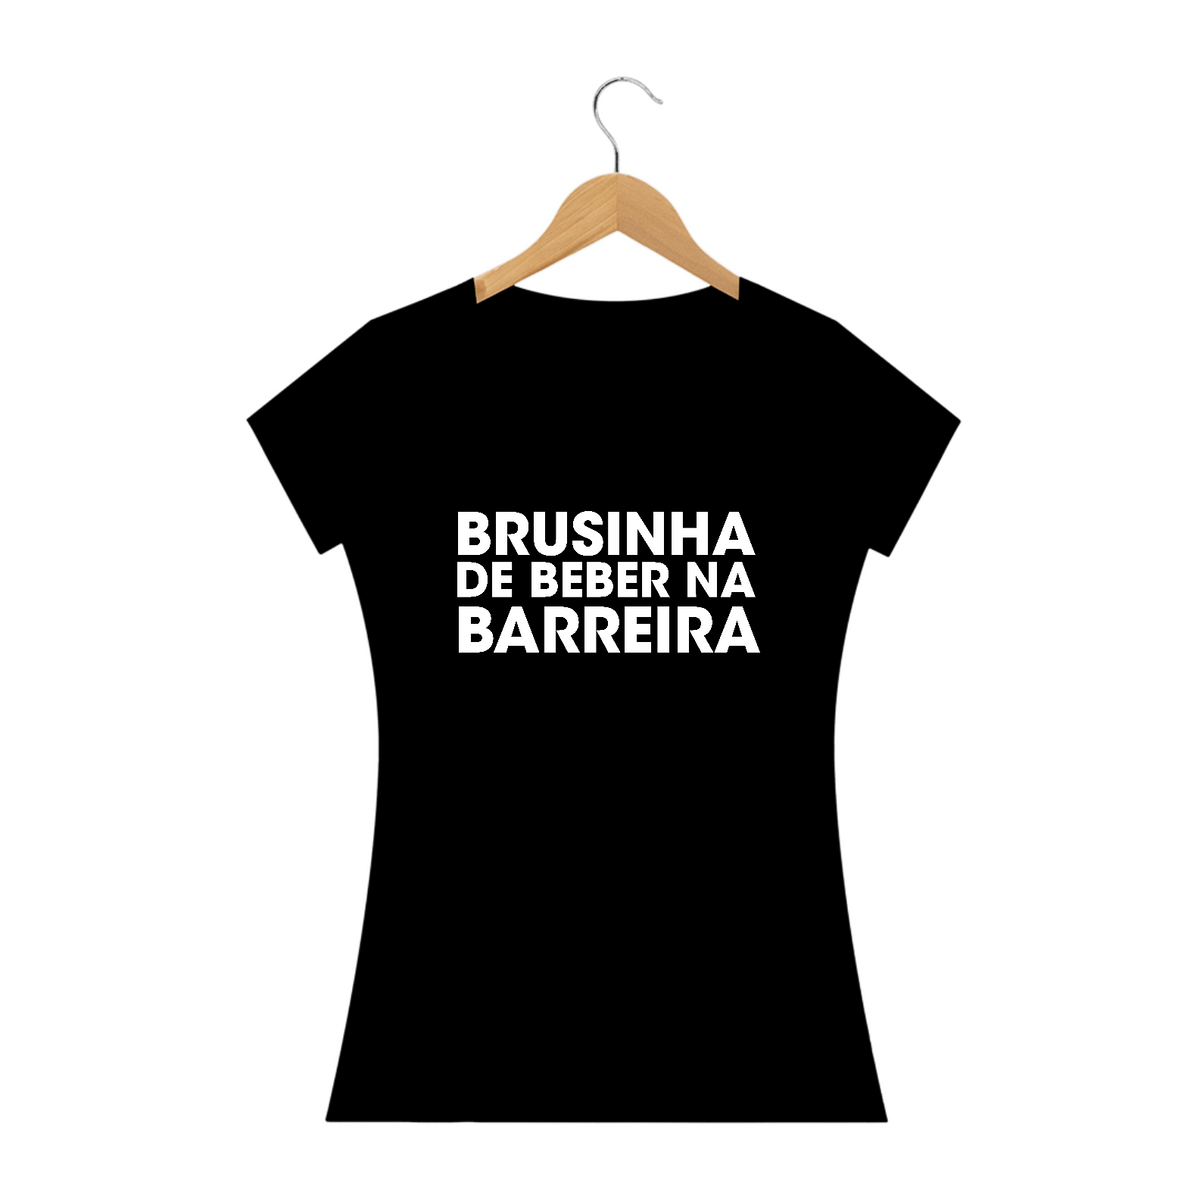 Nome do produto: BRUSINHA DE BEBER NA BARREIRA